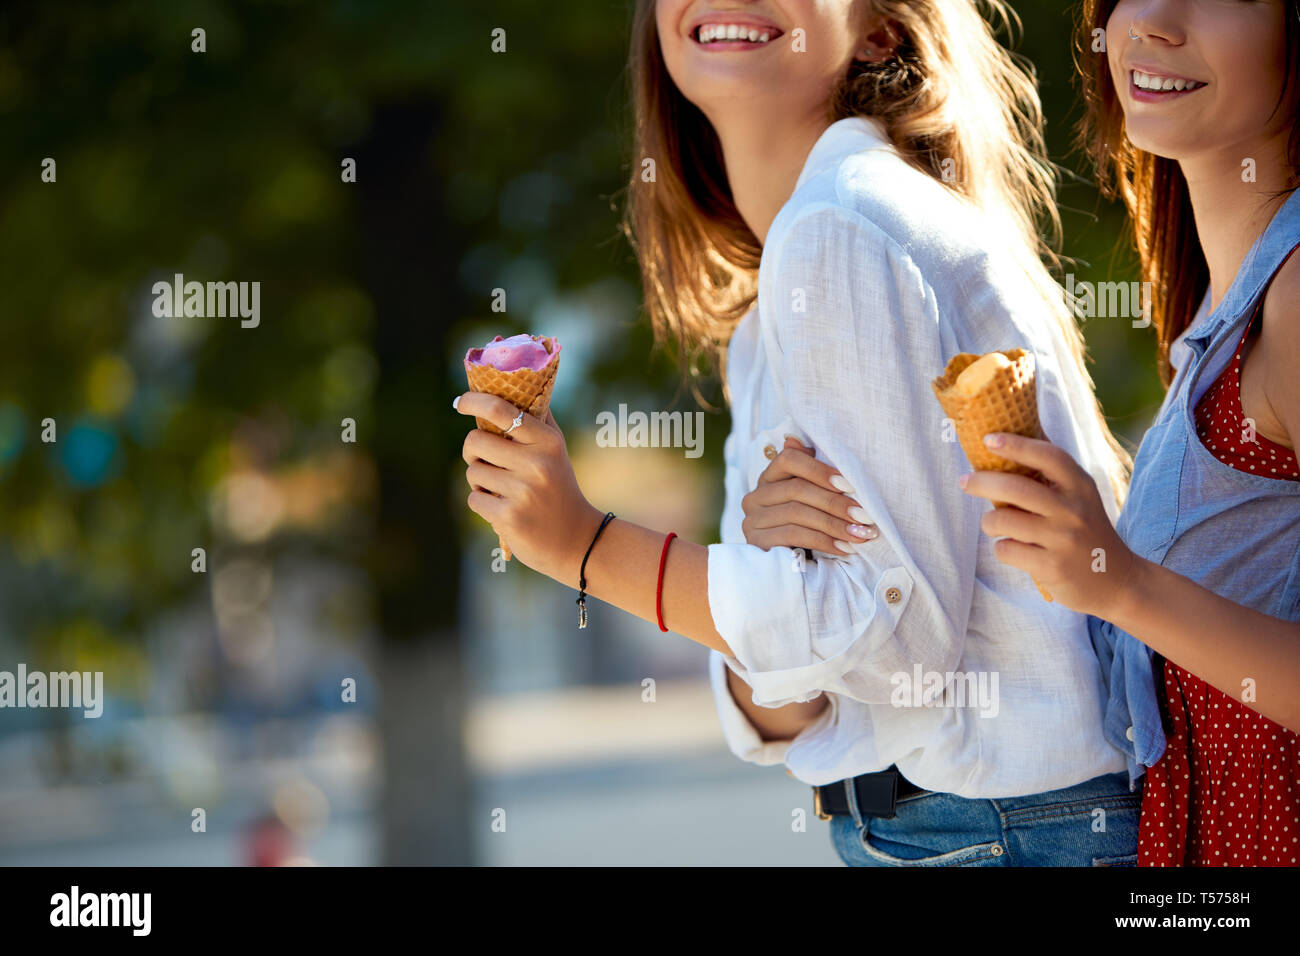 Nahaufnahme von Eistüten in der Hand einer Frau, die mit ihrem Freund. Zwei junge Frauen im Freien essen Eis an einem sonnigen Tag. Isolierte Sicht, Stockfoto